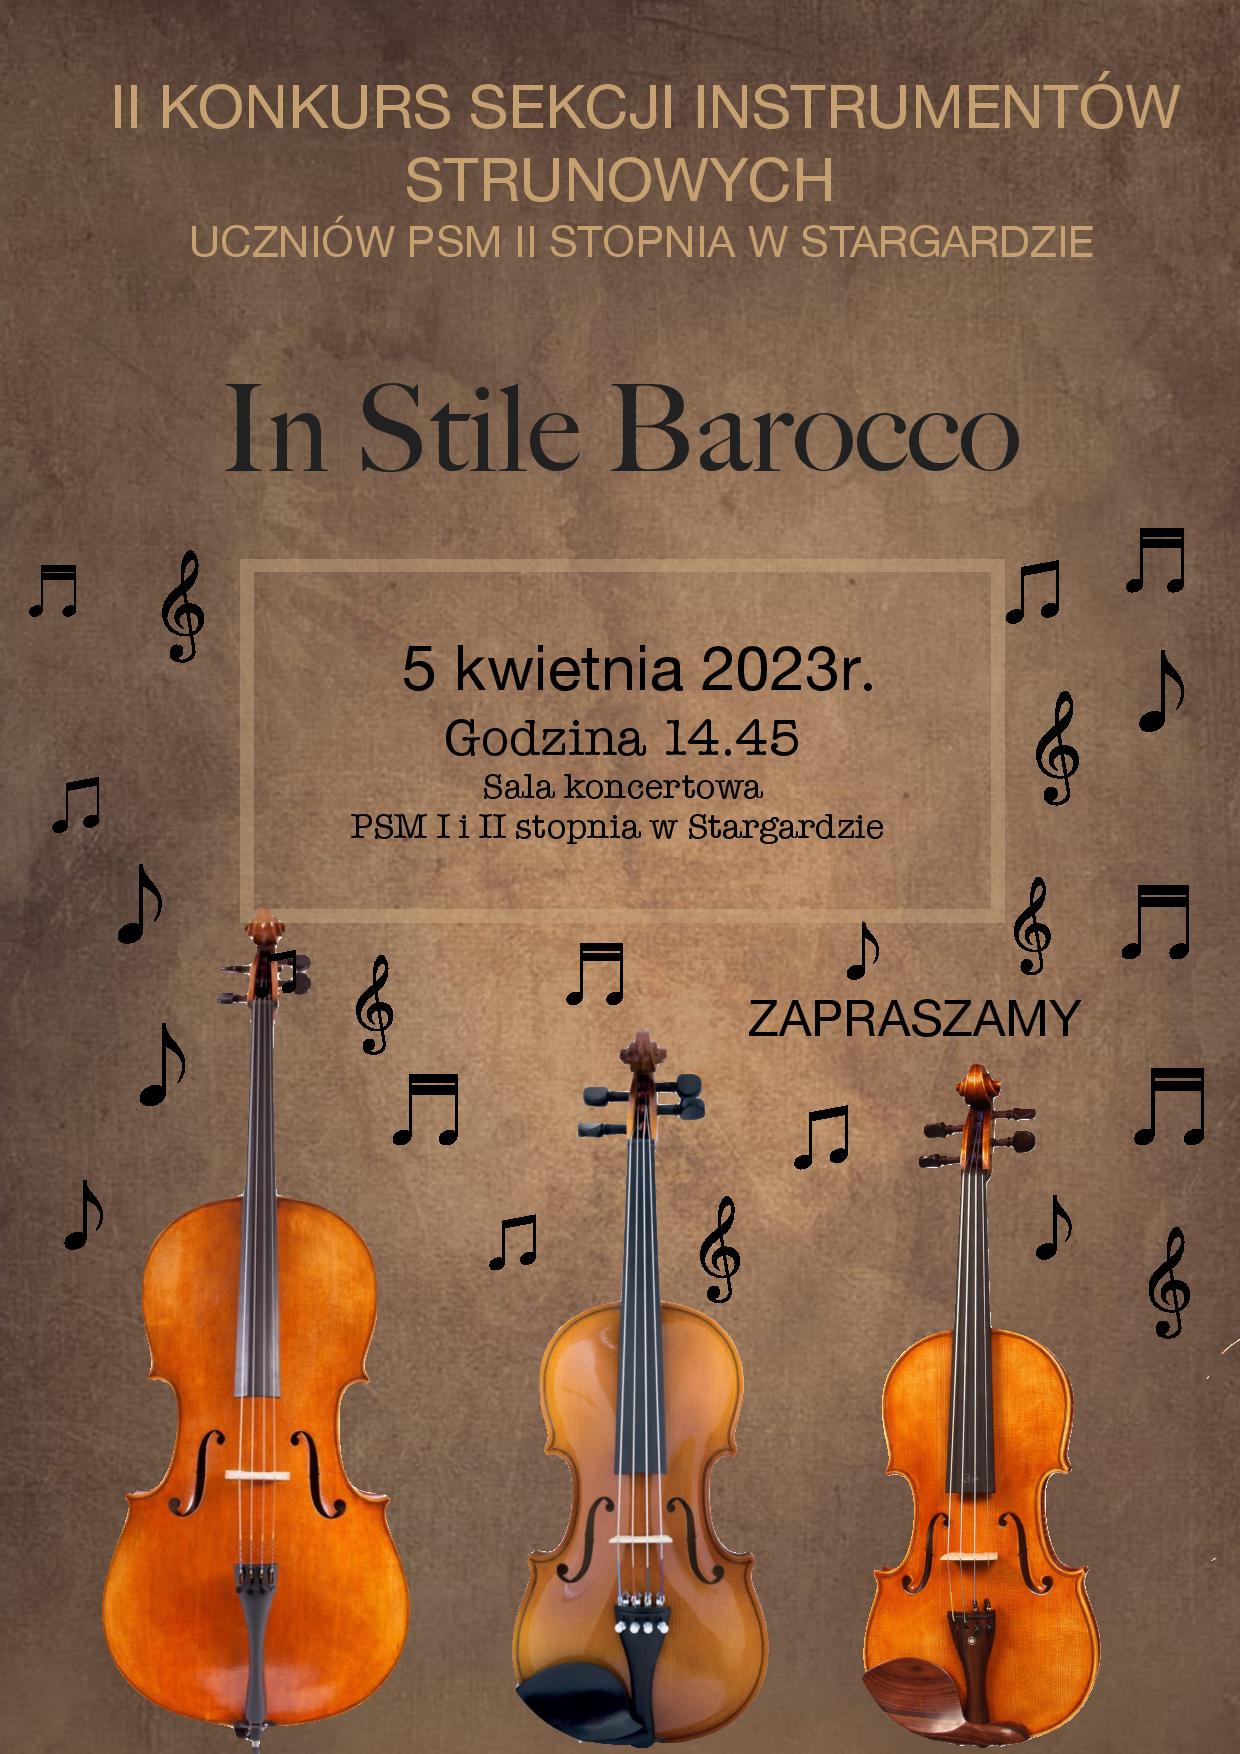 Plakat informacyjny 2. Konkursu sekcji instrumentów strunowych In Stile Barocco uczniów Państwowej Szkoły Muzycznej drugiego stopnia w Stargardzie w dniu 5 kwietnia 2023.